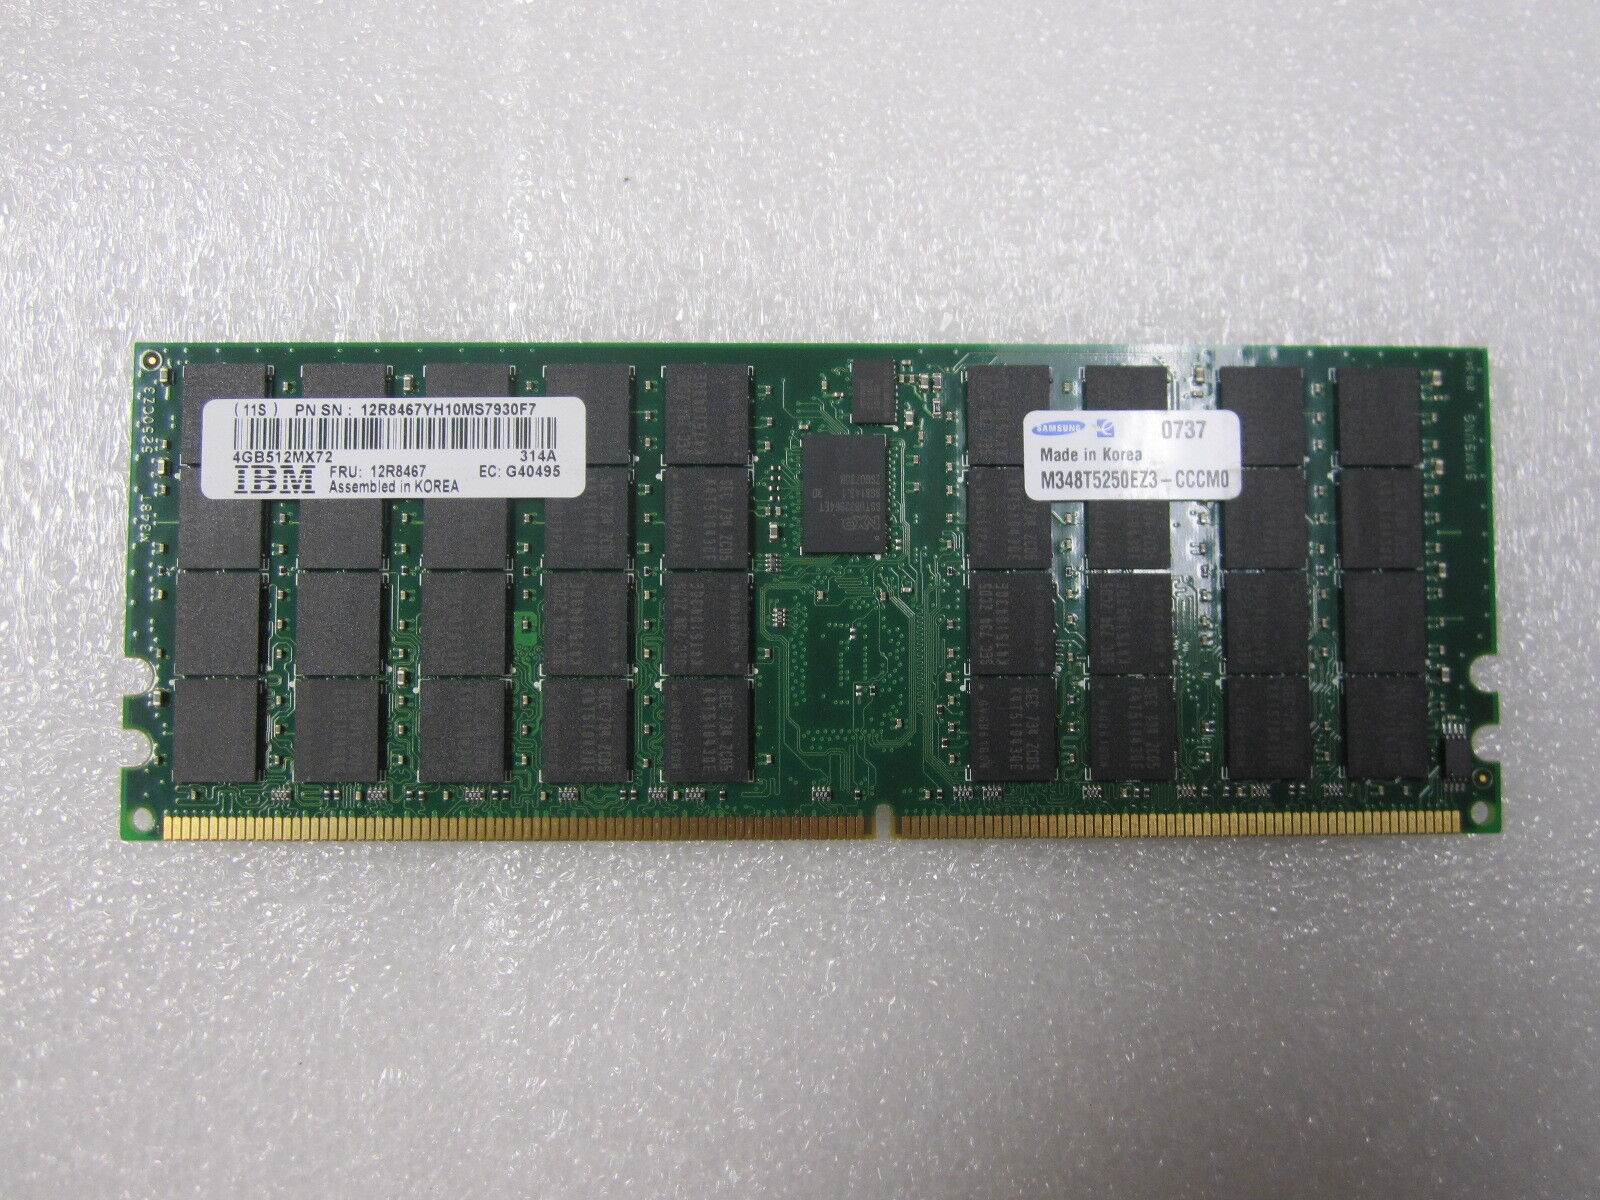 IBM 4GB DDR2 400Mhz REG ECC Memory 12R8467